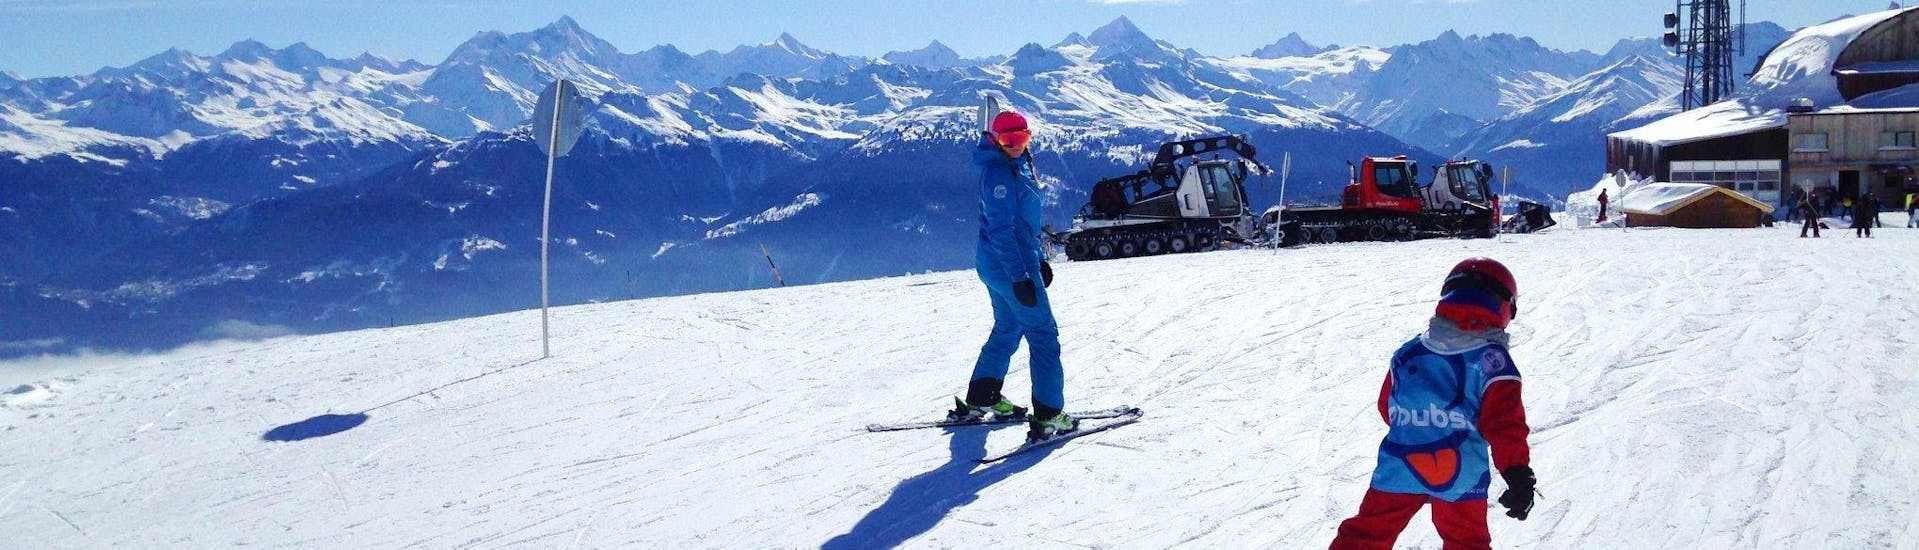 Clases de esquí privadas para niños a partir de 2 años para debutantes.